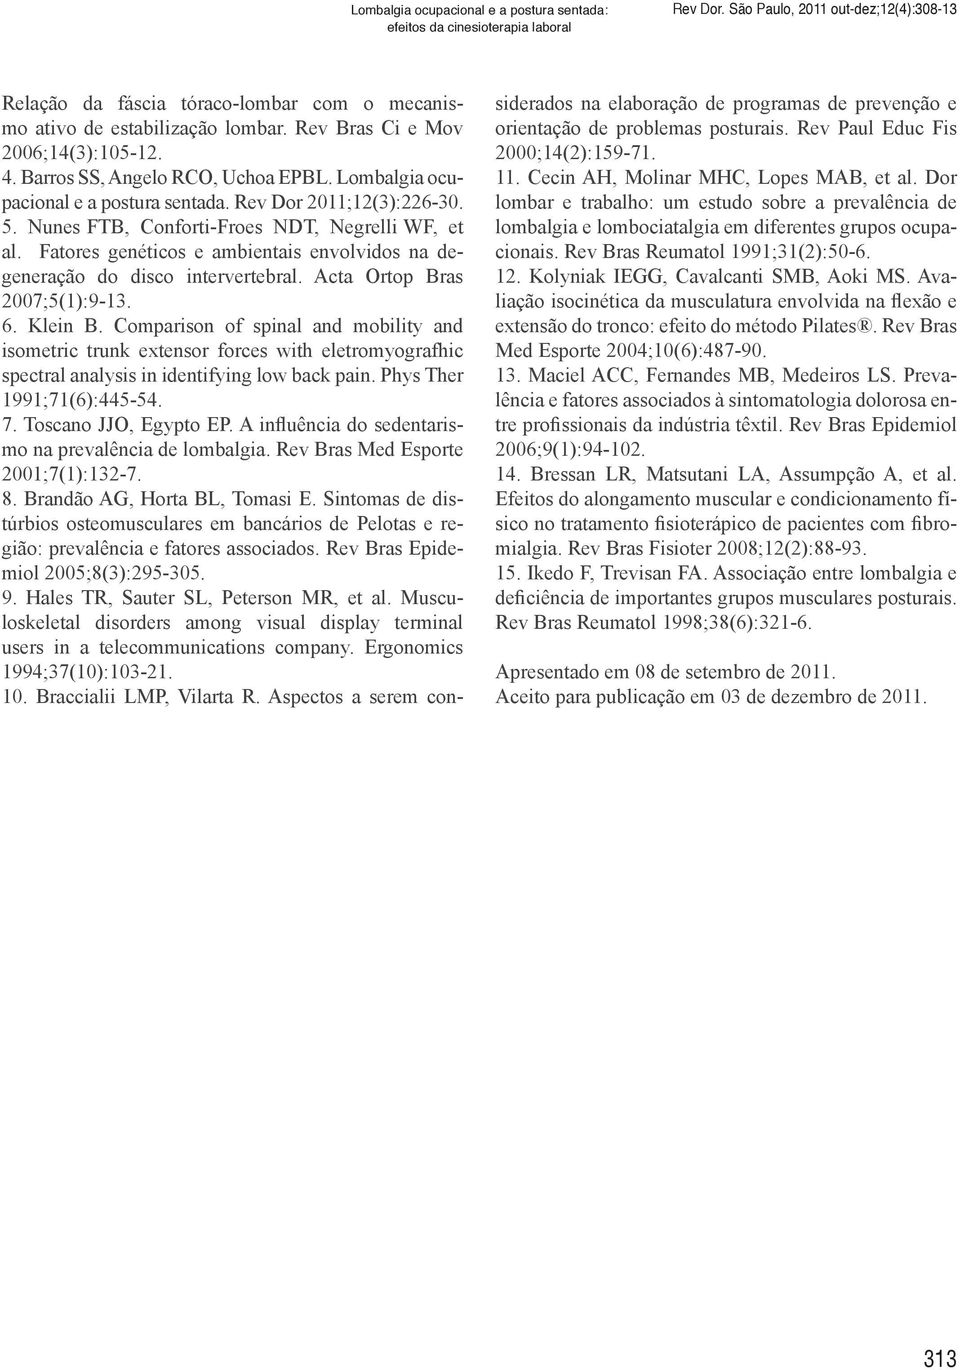 Lombalgia ocupacional e a postura sentada. Rev Dor 2011;12(3):226-30. 5. Nunes FTB, Conforti-Froes NDT, Negrelli WF, et al.